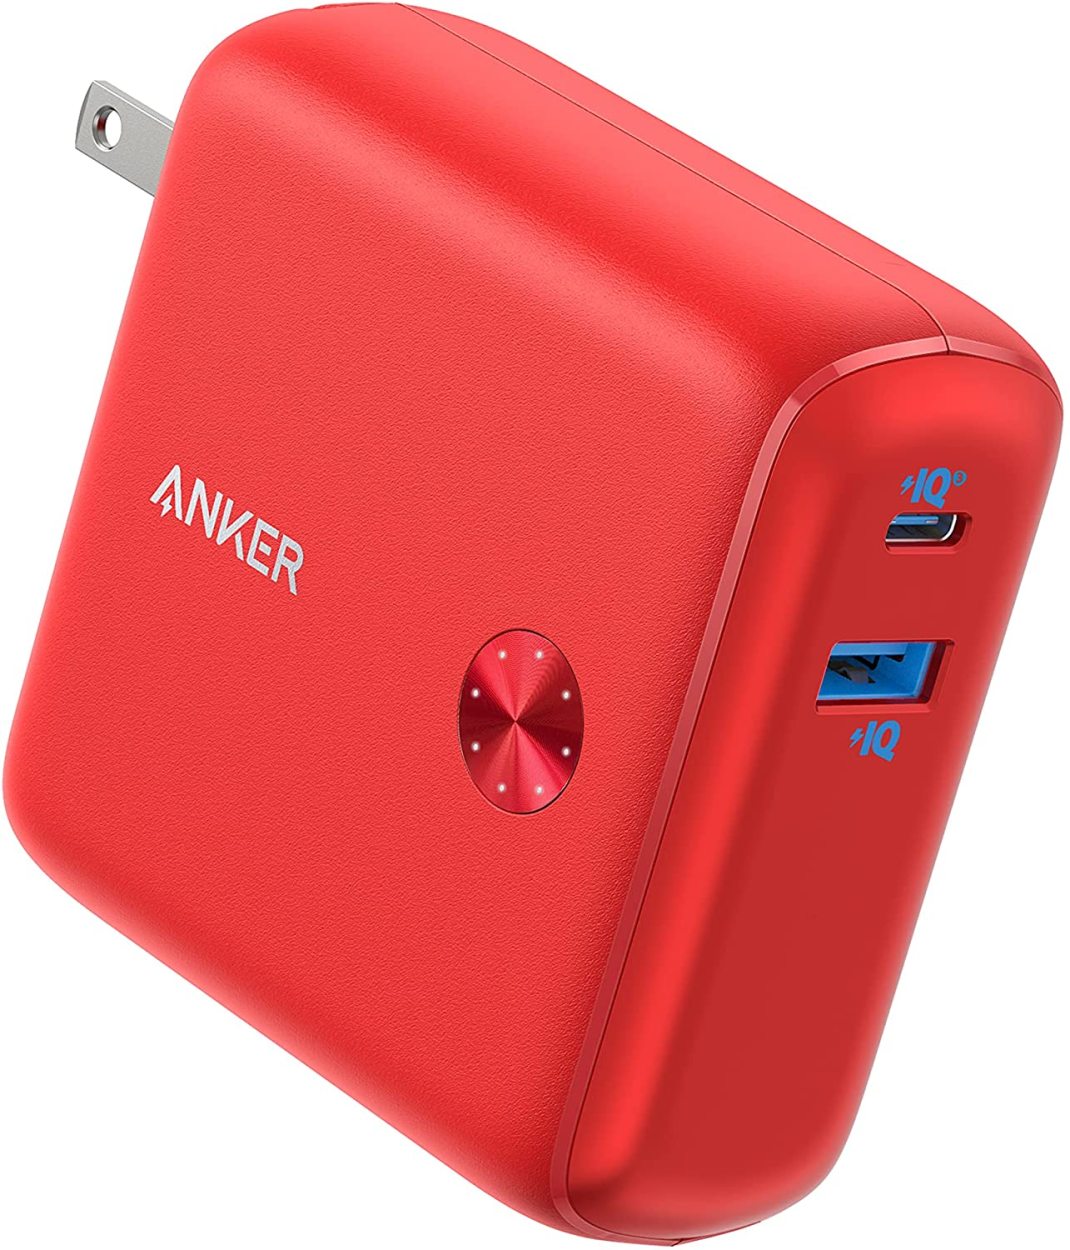 モバイルバッテリー Anker PowerCore Fusion 10000 (9700mAh 20W PD モバイルバッテリー搭載USB充電器) USB Power Delivery対応   PSE認証済 アンカー